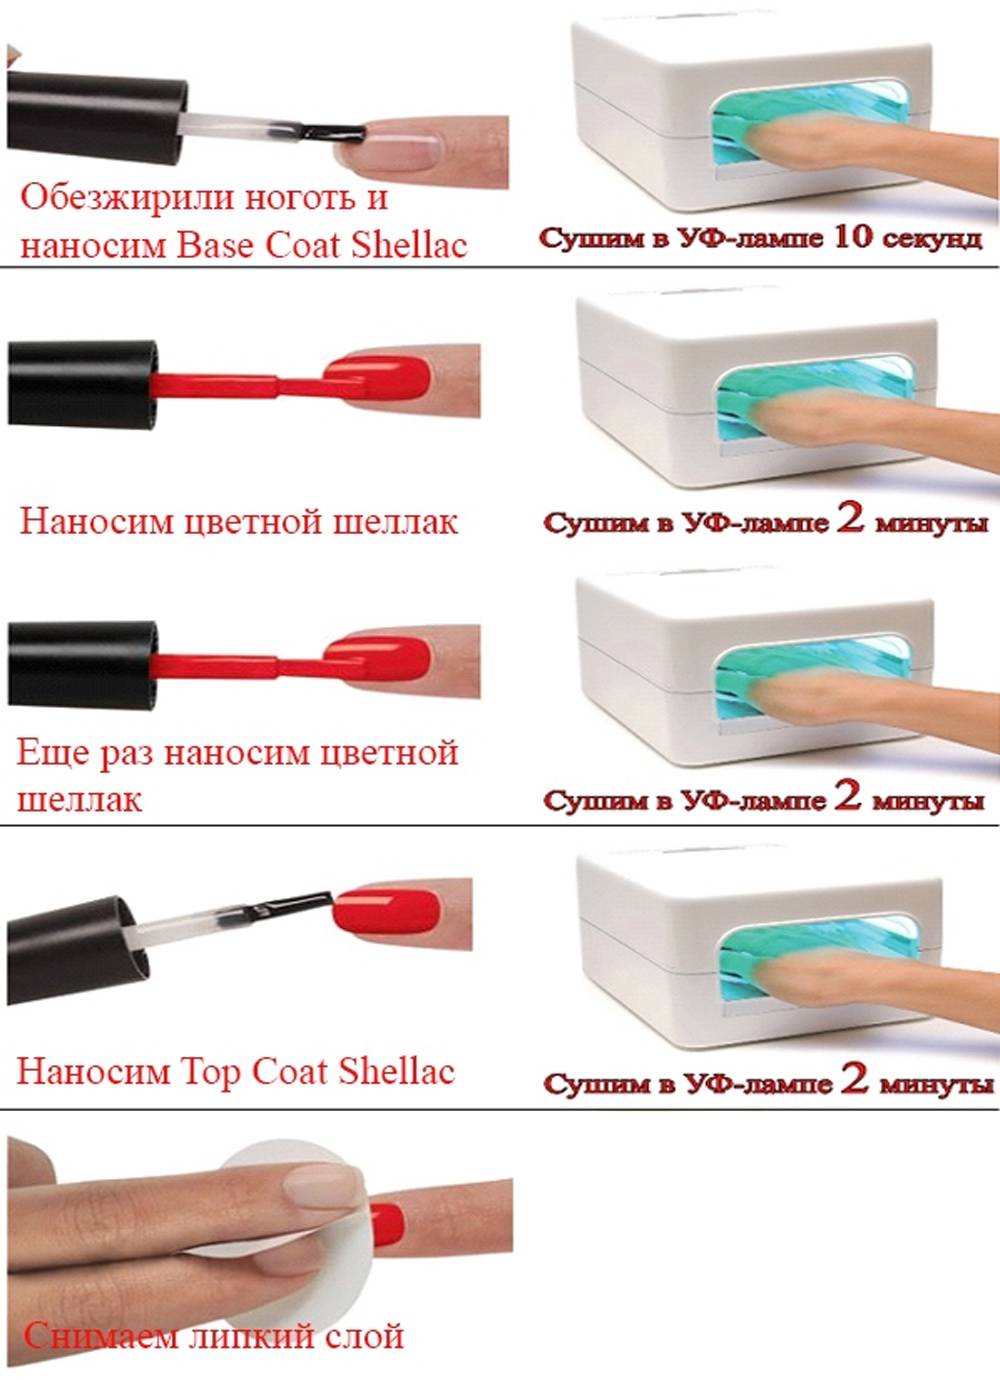 Как правильно наносить гель лак на ногти поэтапно в домашних условиях, чтобы он долго держался